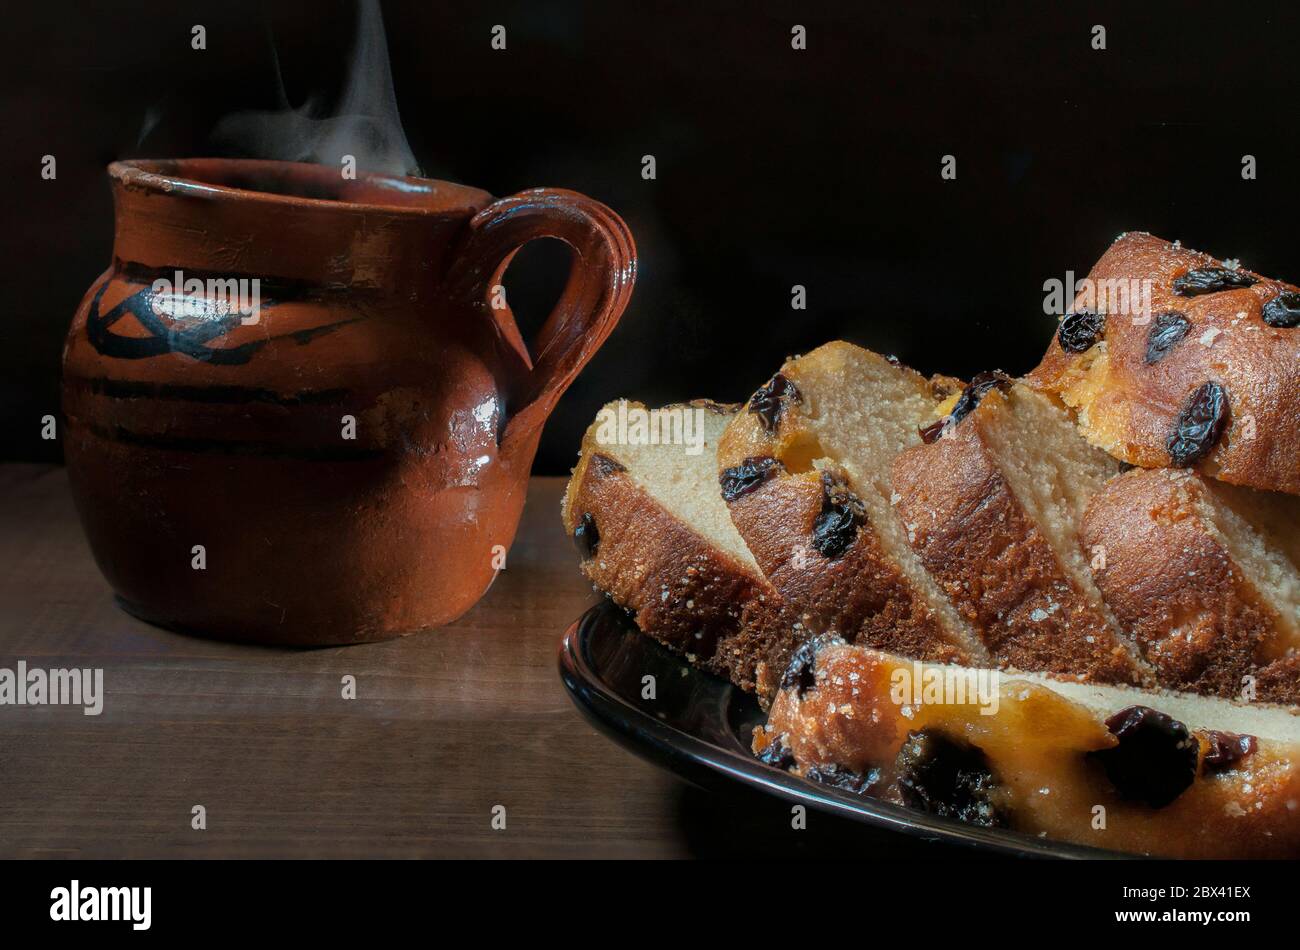 Kuchenscheiben mit Rosinen auf einem schwarzen Teller und einem mexikanischen Ton- oder Schlamm-Kaffeebecher, auf dem Hintergrund auf einem rustikalen Tisch und in einer dunklen Umgebung. Stockfoto